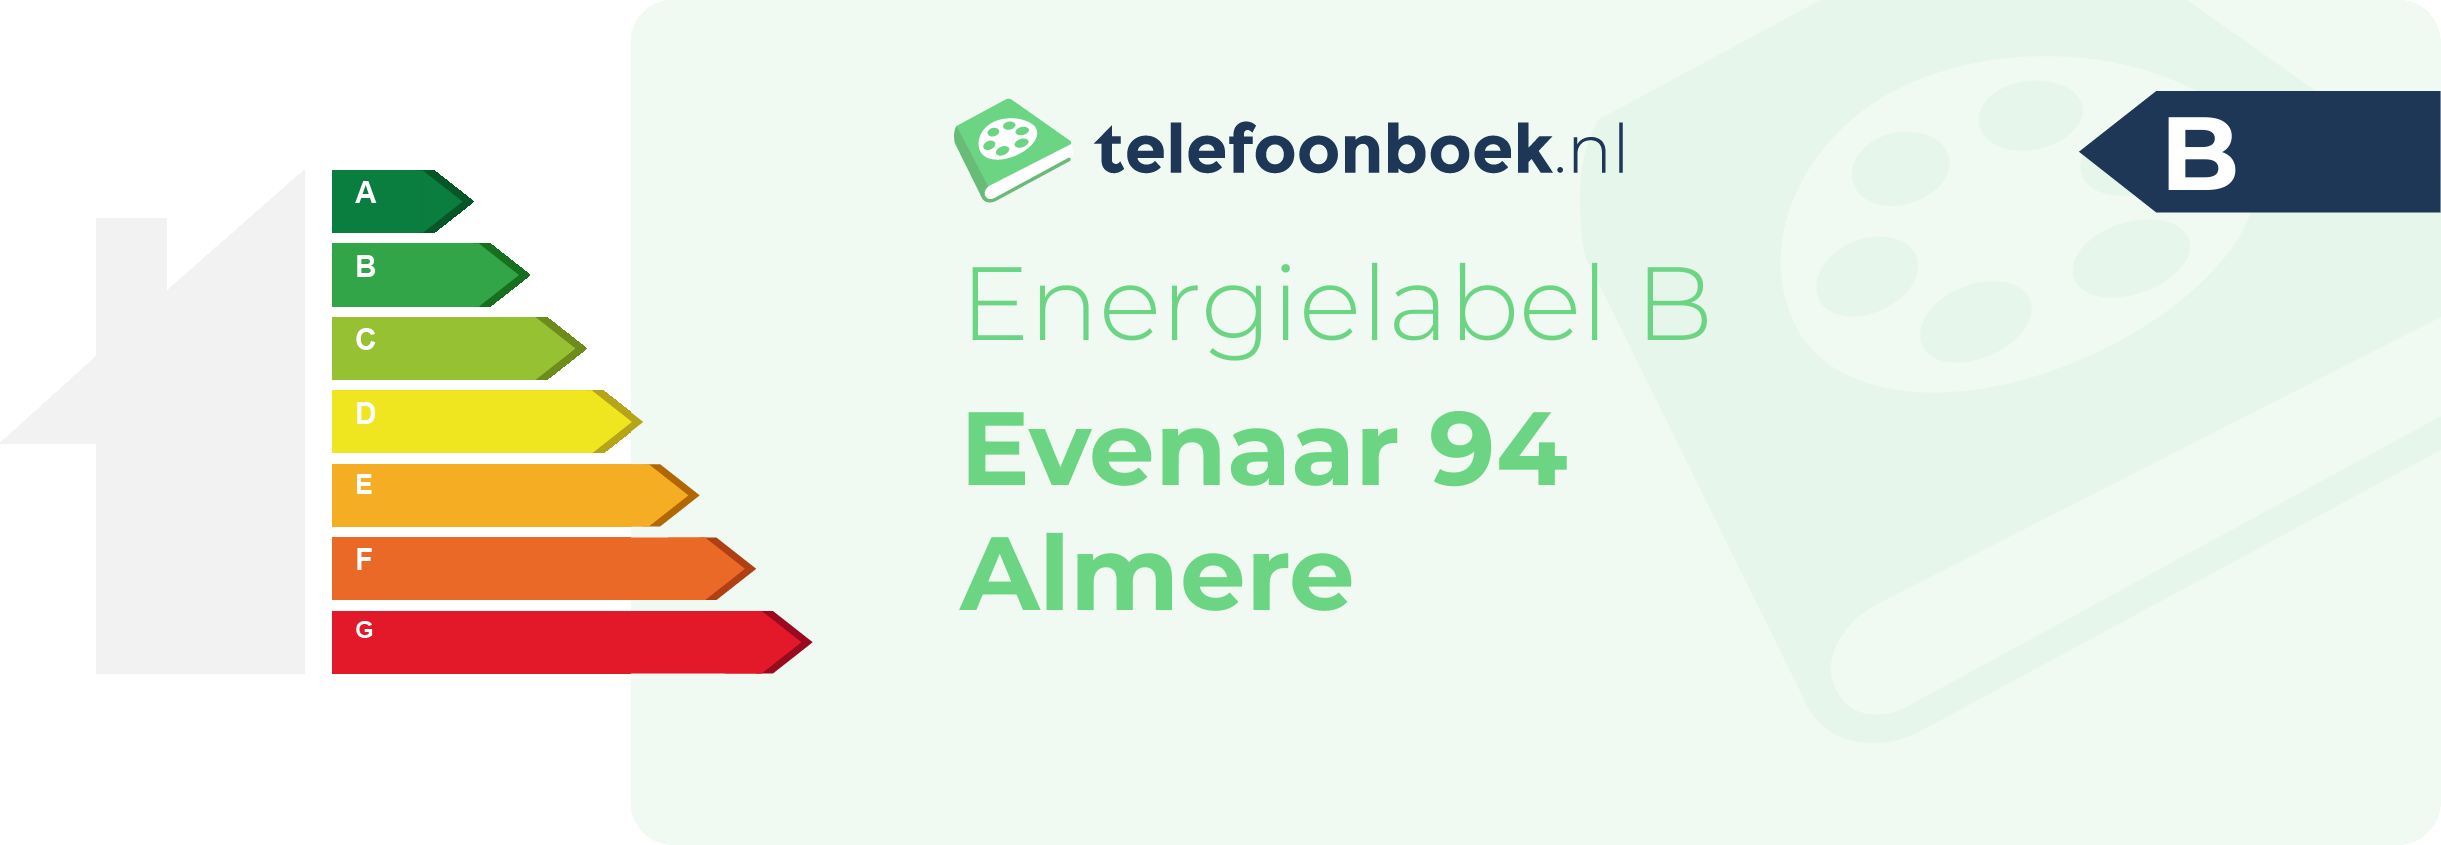 Energielabel Evenaar 94 Almere